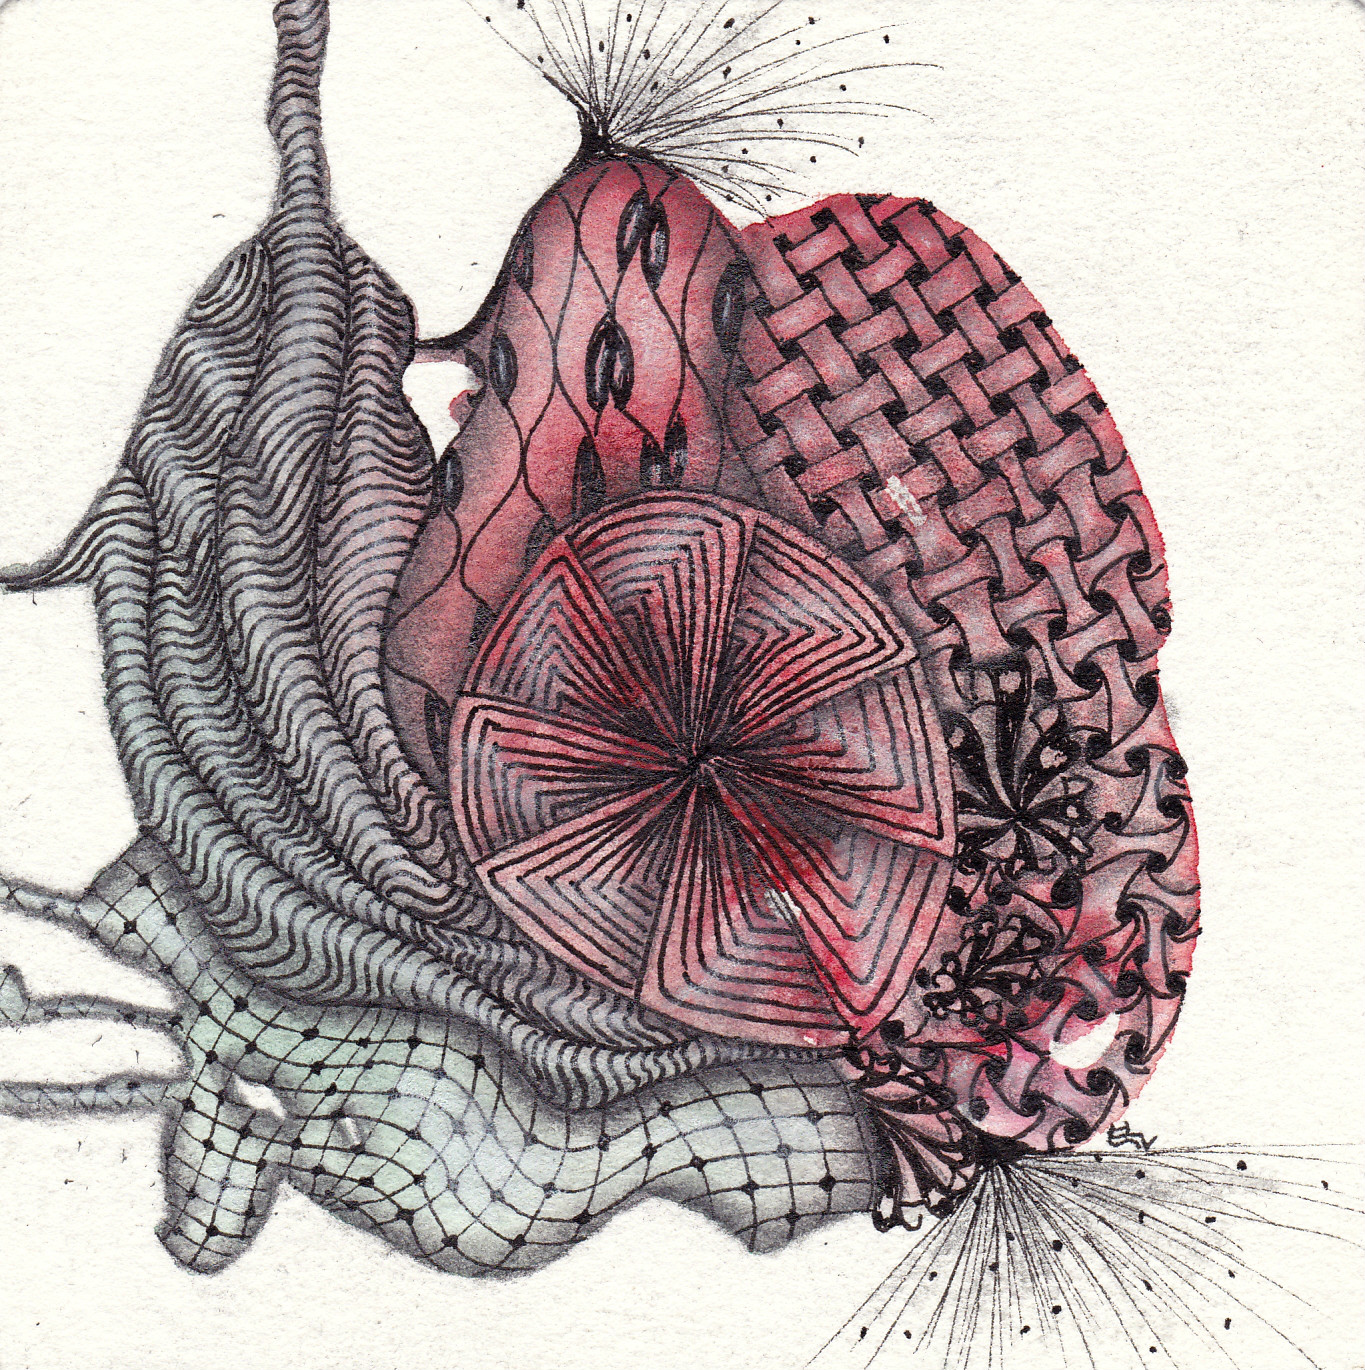 Aquarell mit Zentangle inspired art gezeichnet von Ela Rieger